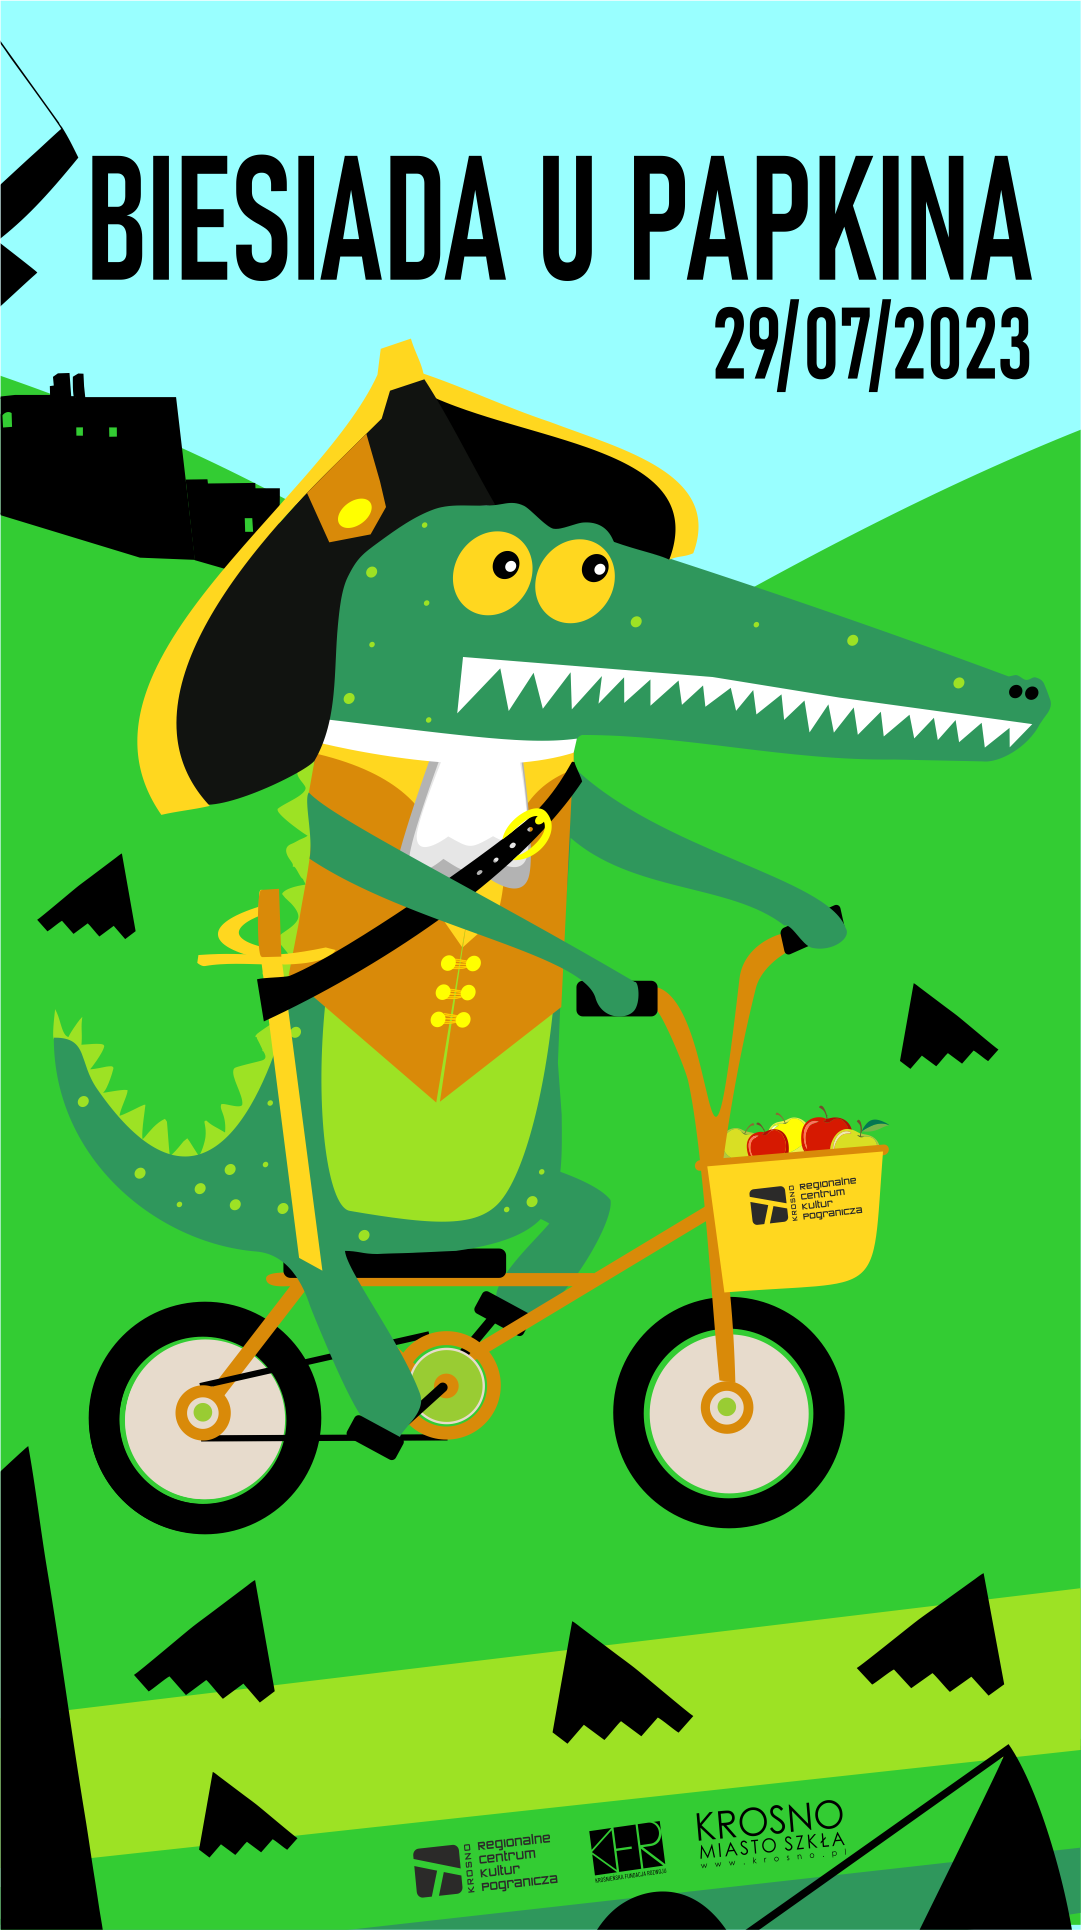 Plakat informujący o wydarzeniu Biesiada u Papkina. Data wydarzenia 29 lipca 2023 r. Na środku plakatu krokodyl jadący na rowerze. 